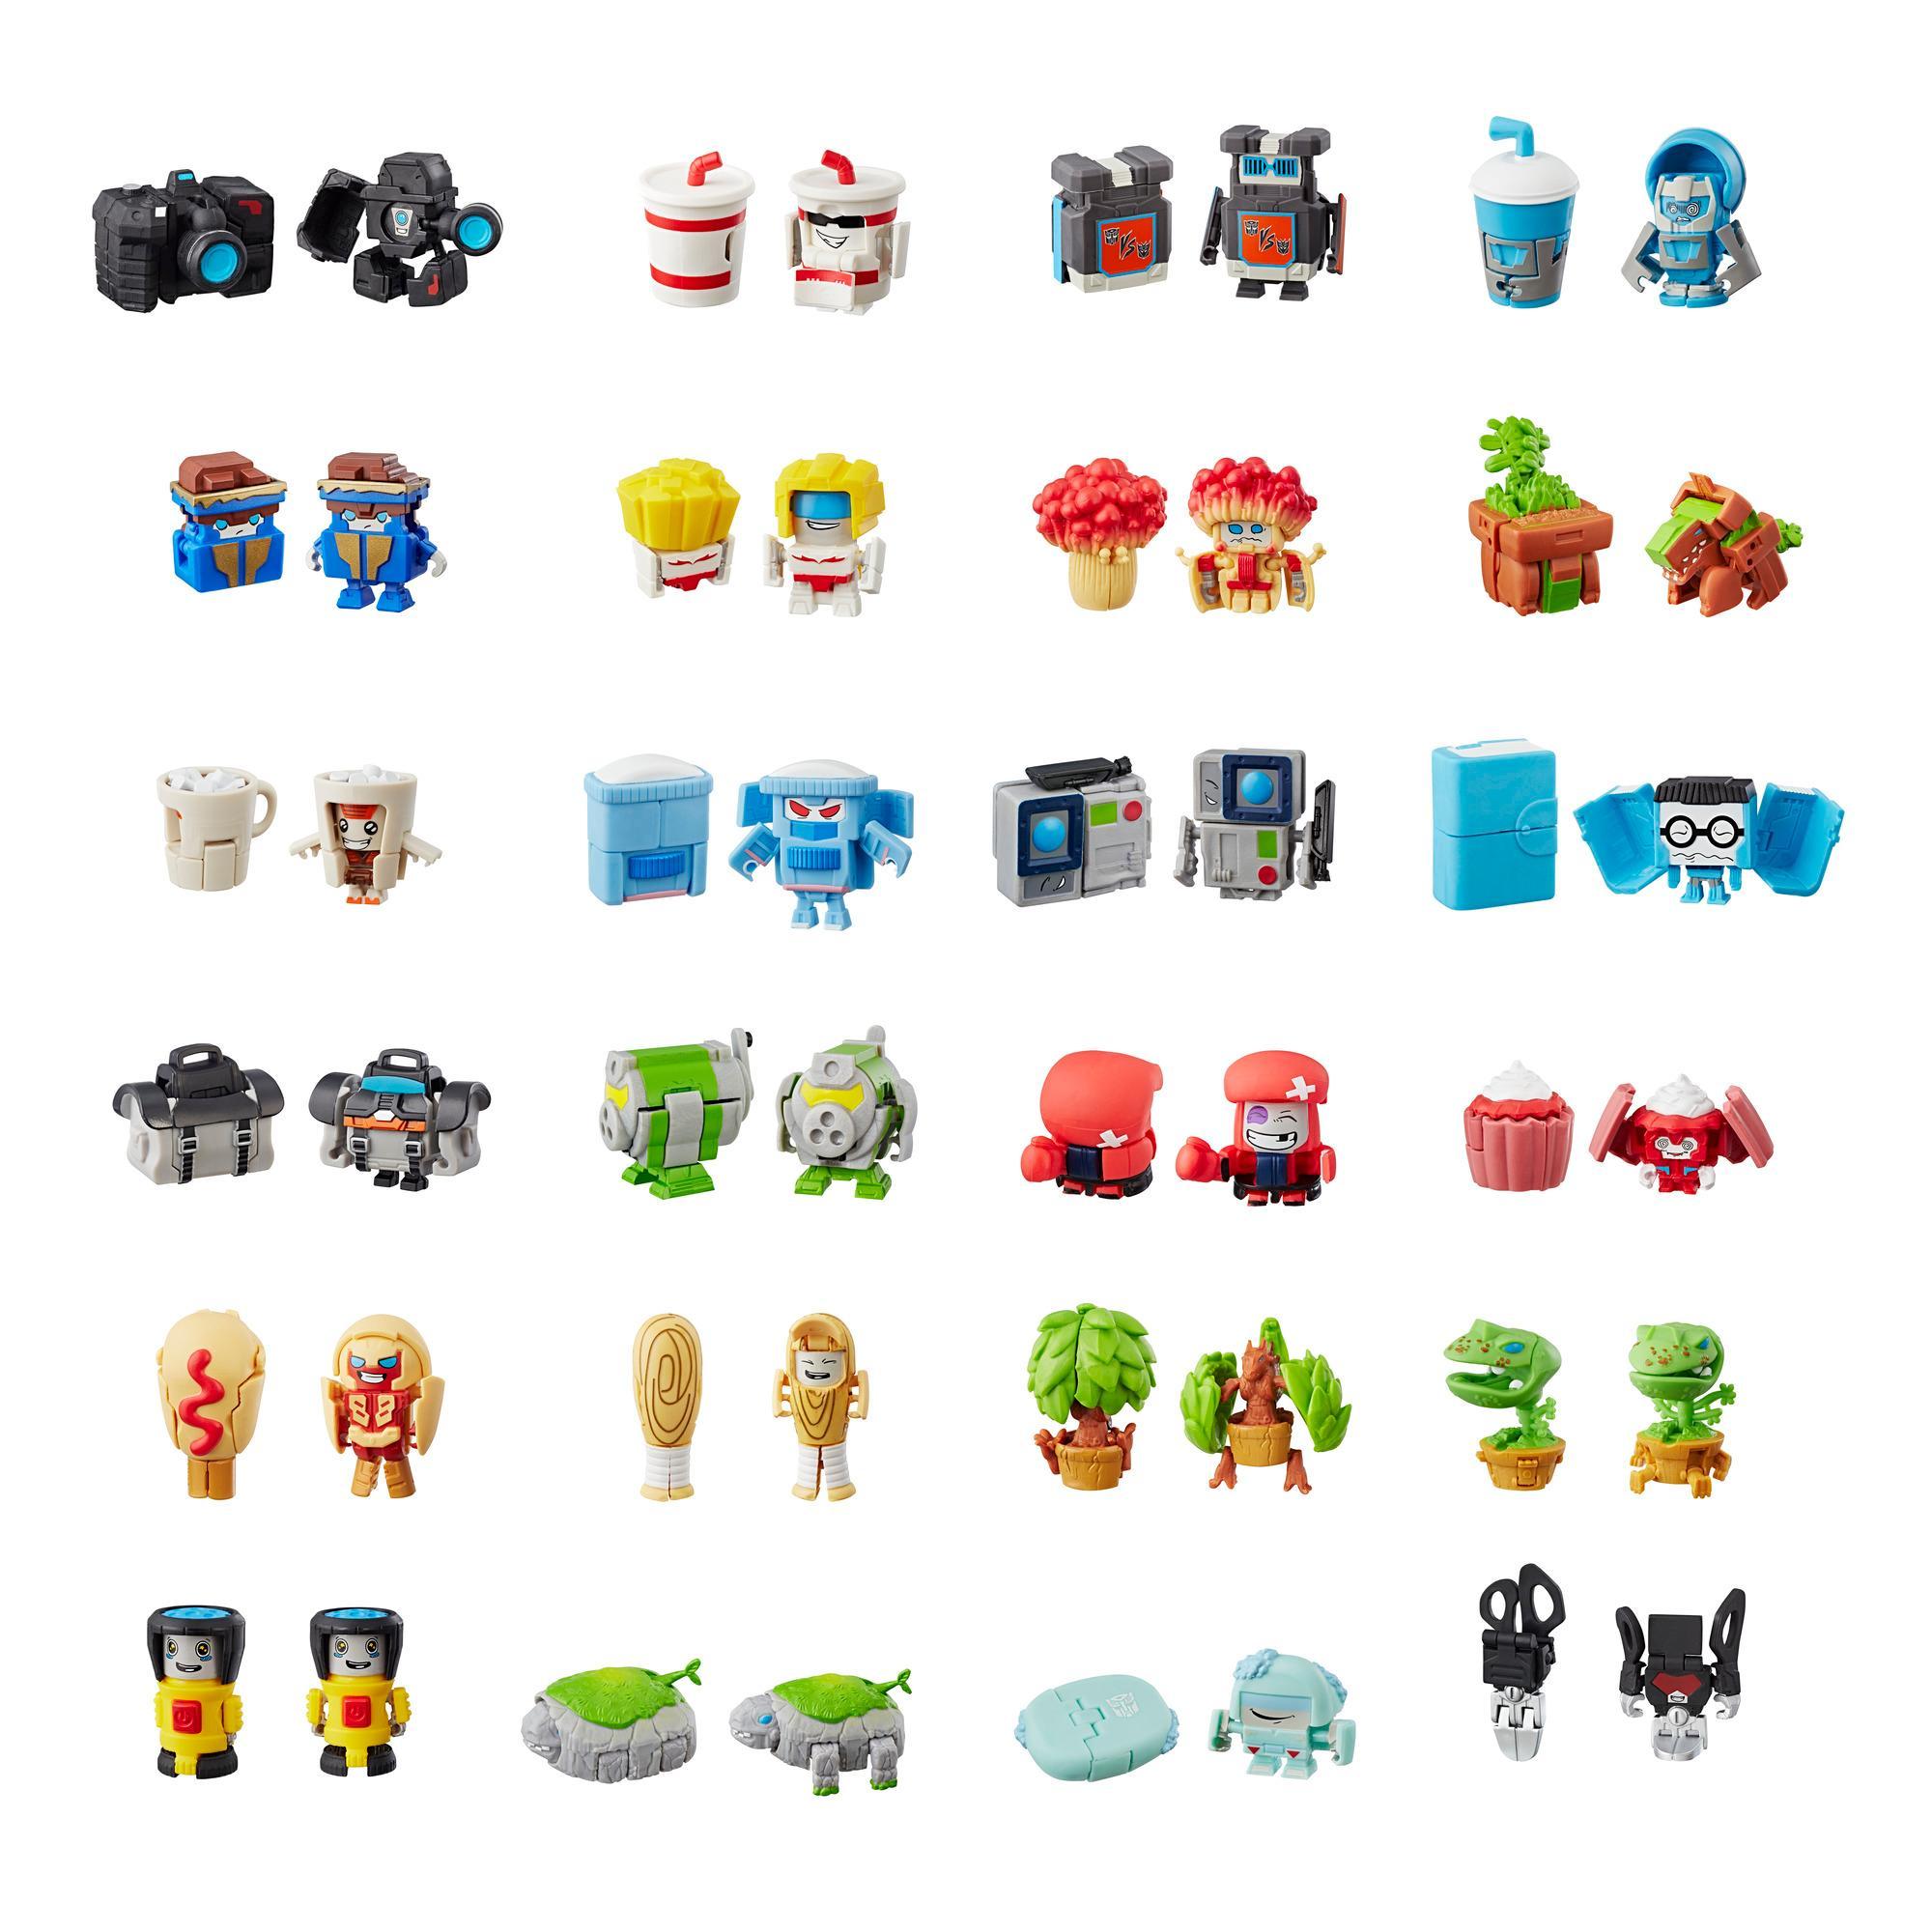 Transformers BotBots - Personaggi misteriosi 2-in-1, serie 2 (blind bag, modelli e colori possono variare) product thumbnail 1